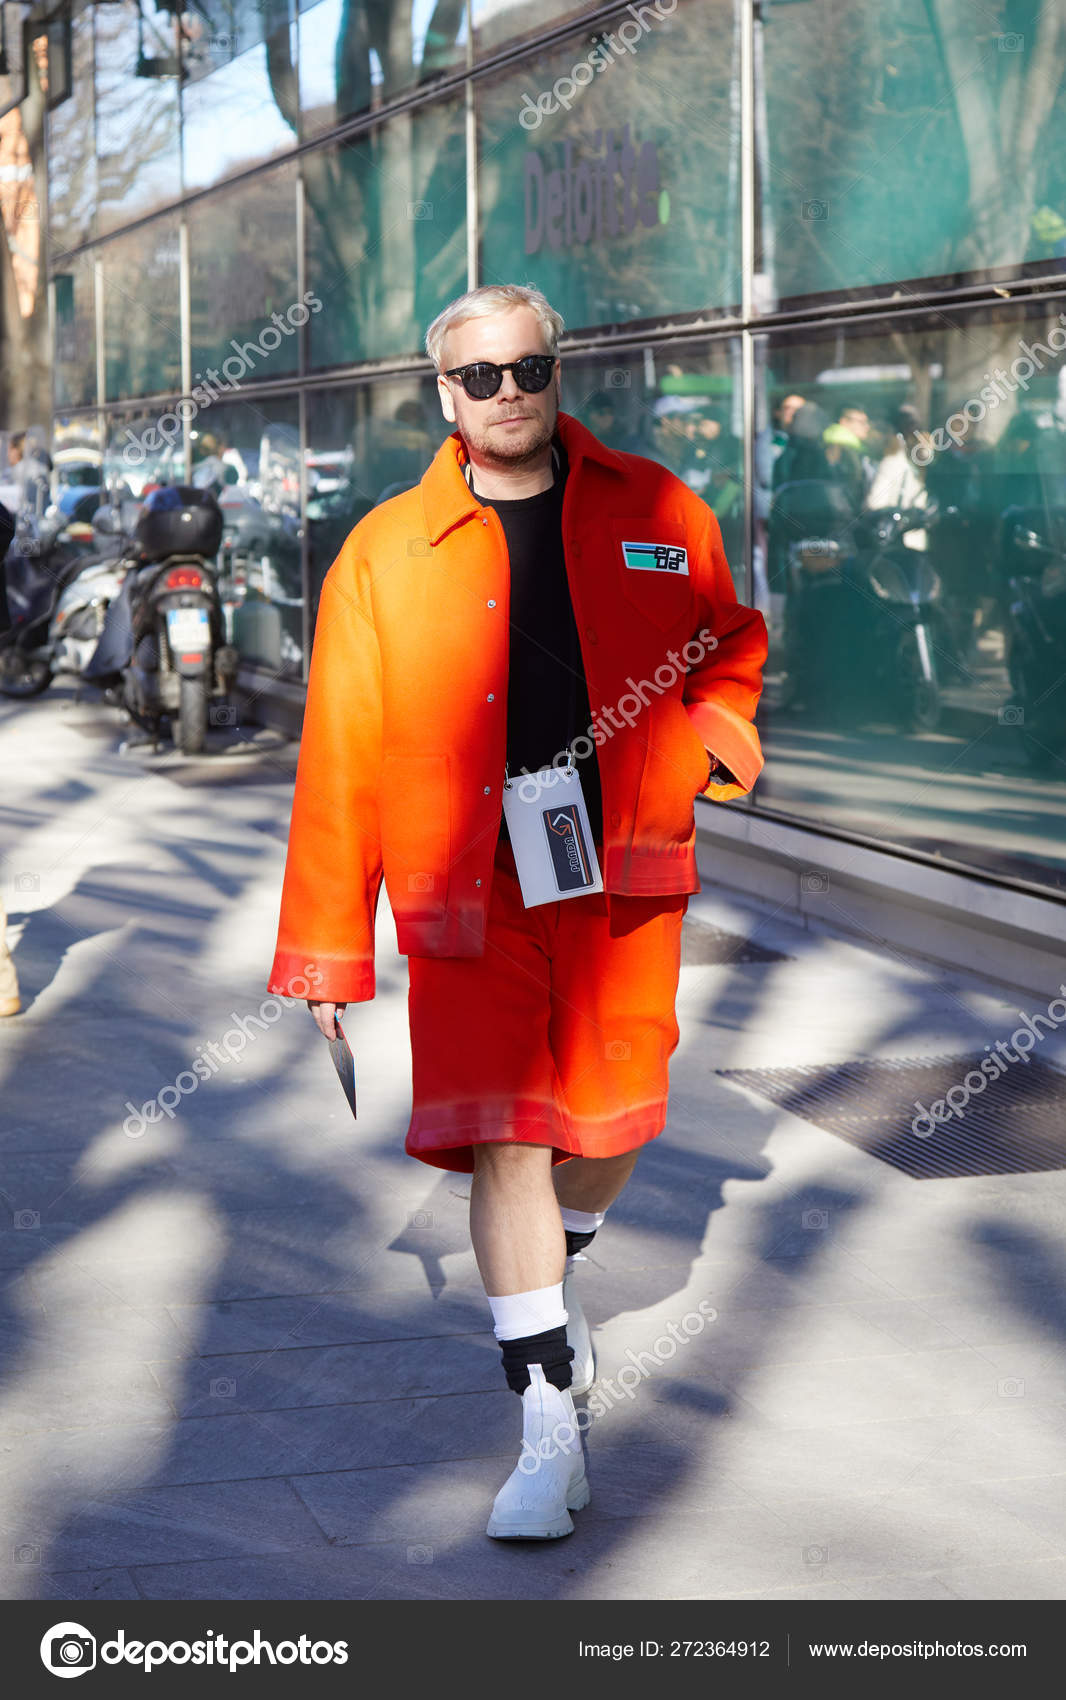 orange prada jacket